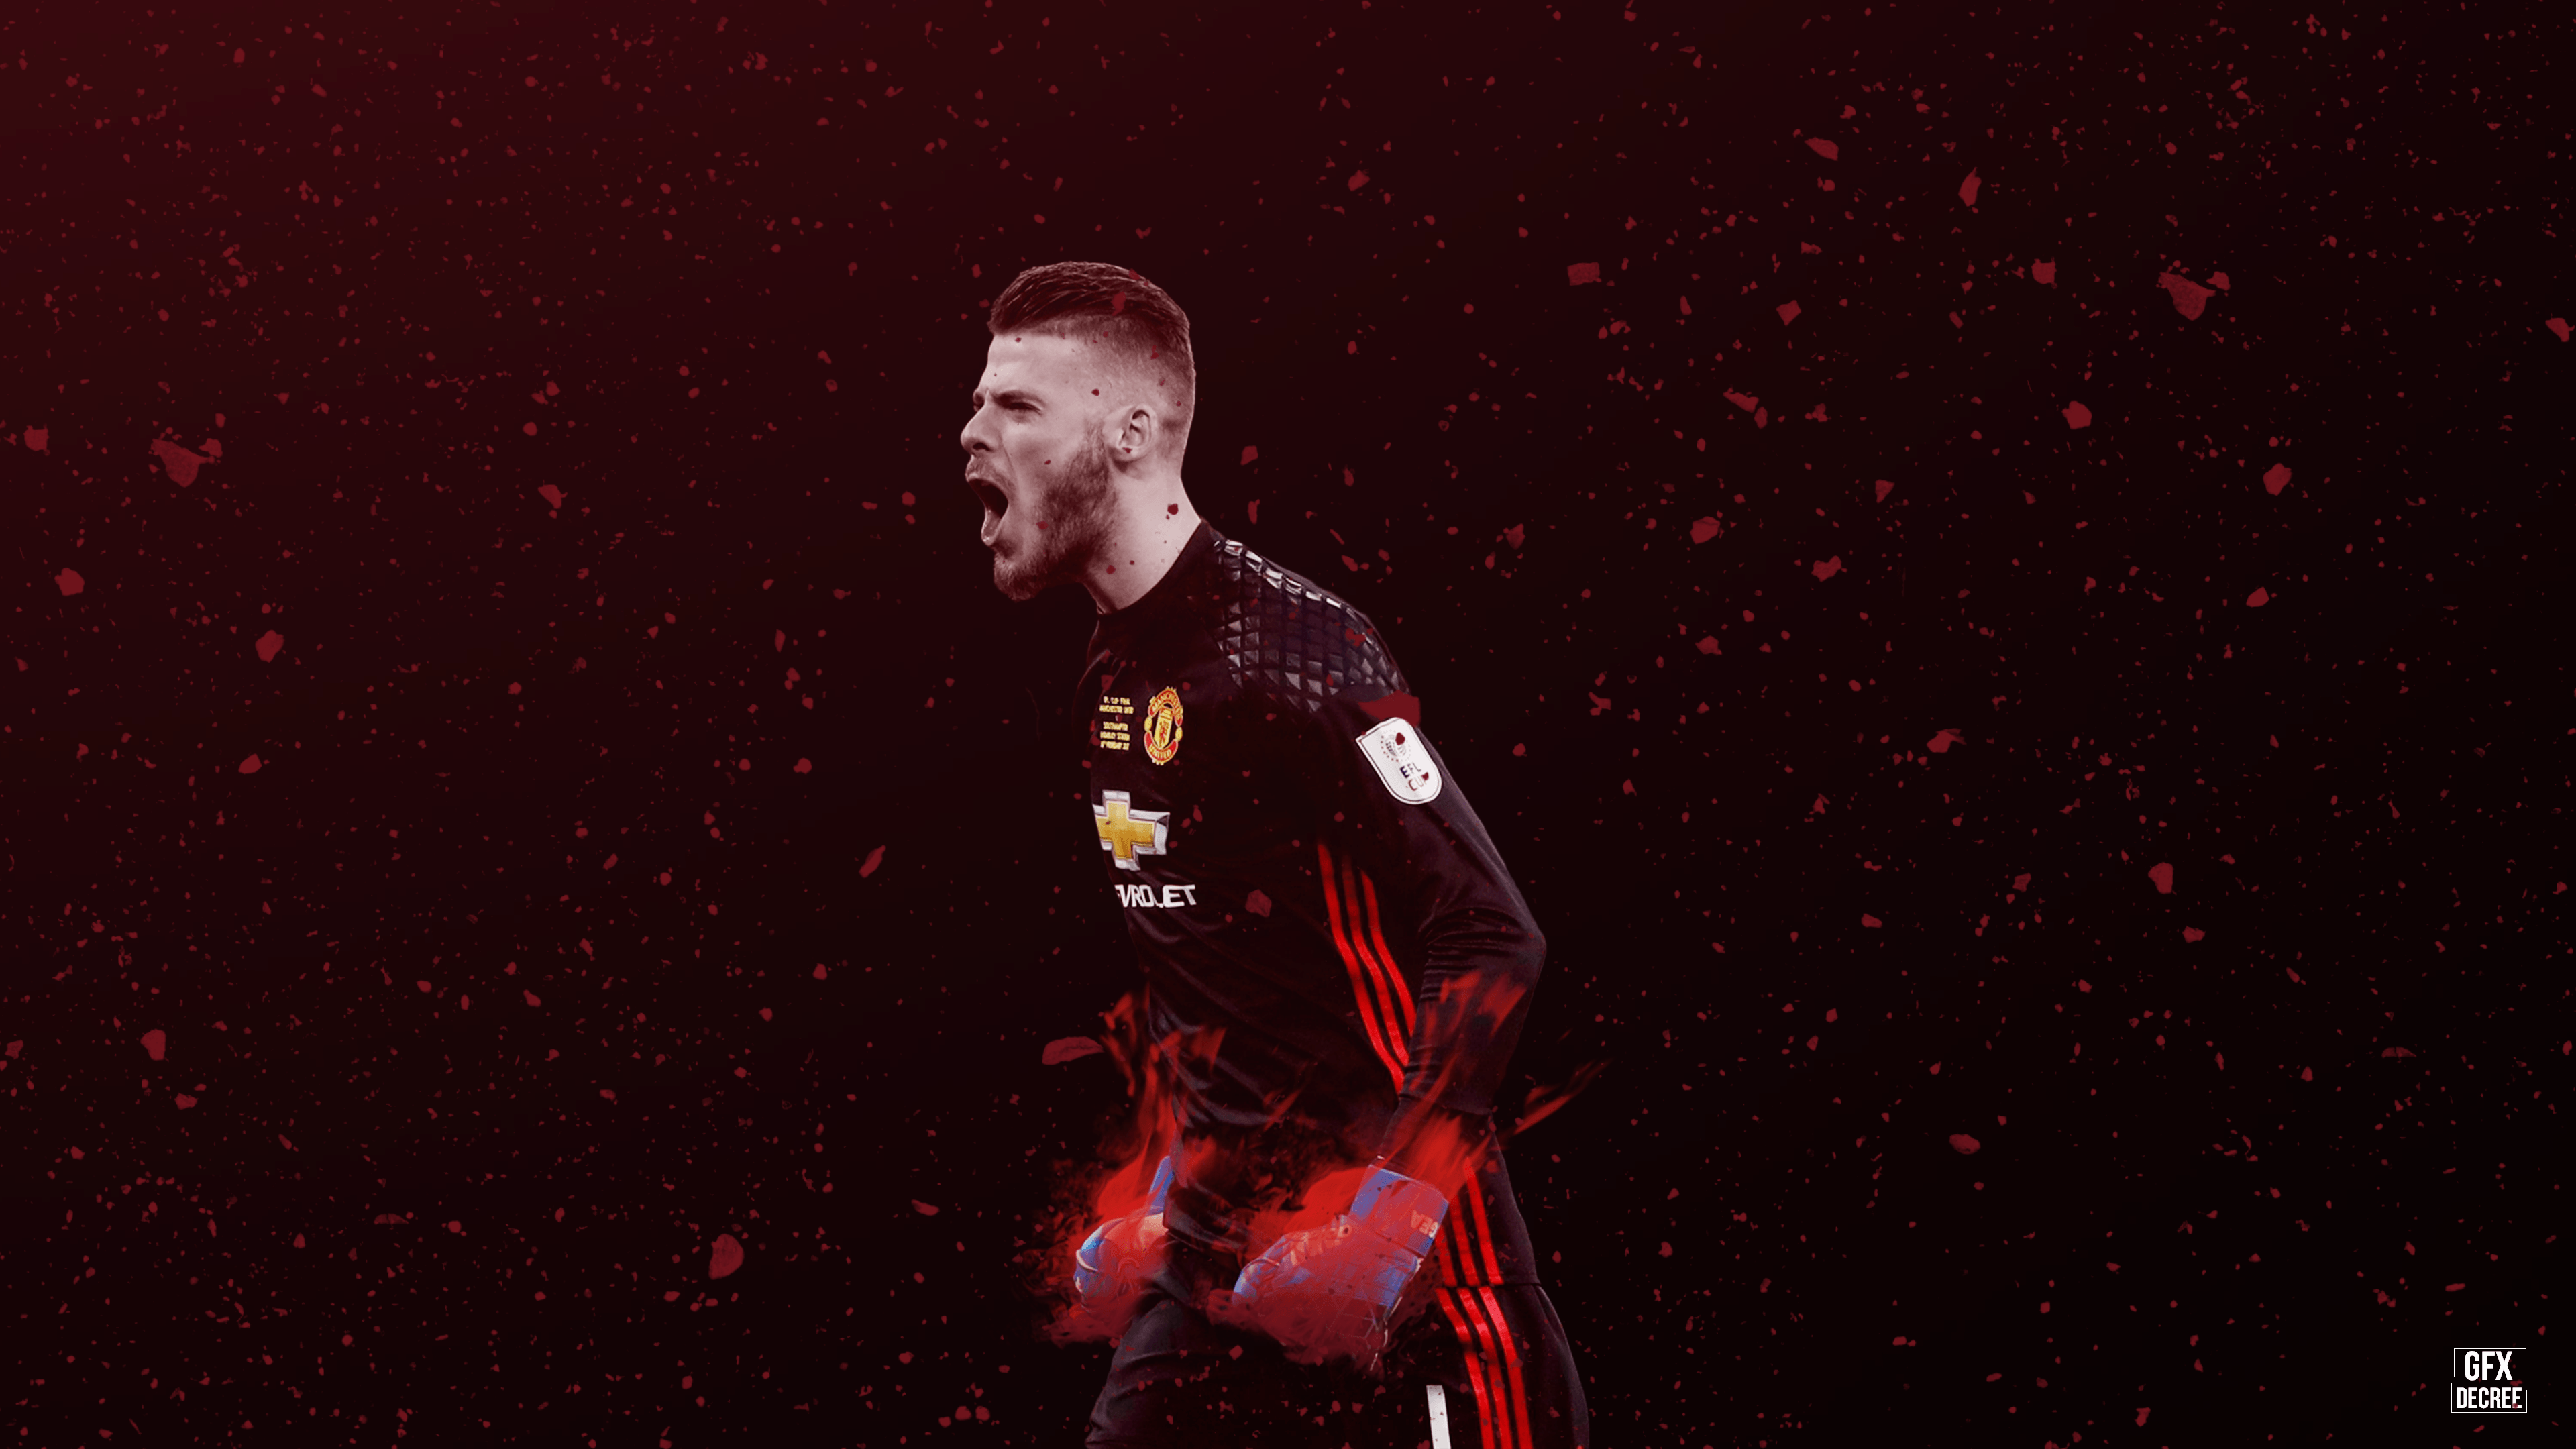 Manchester United 4K Wallpaper